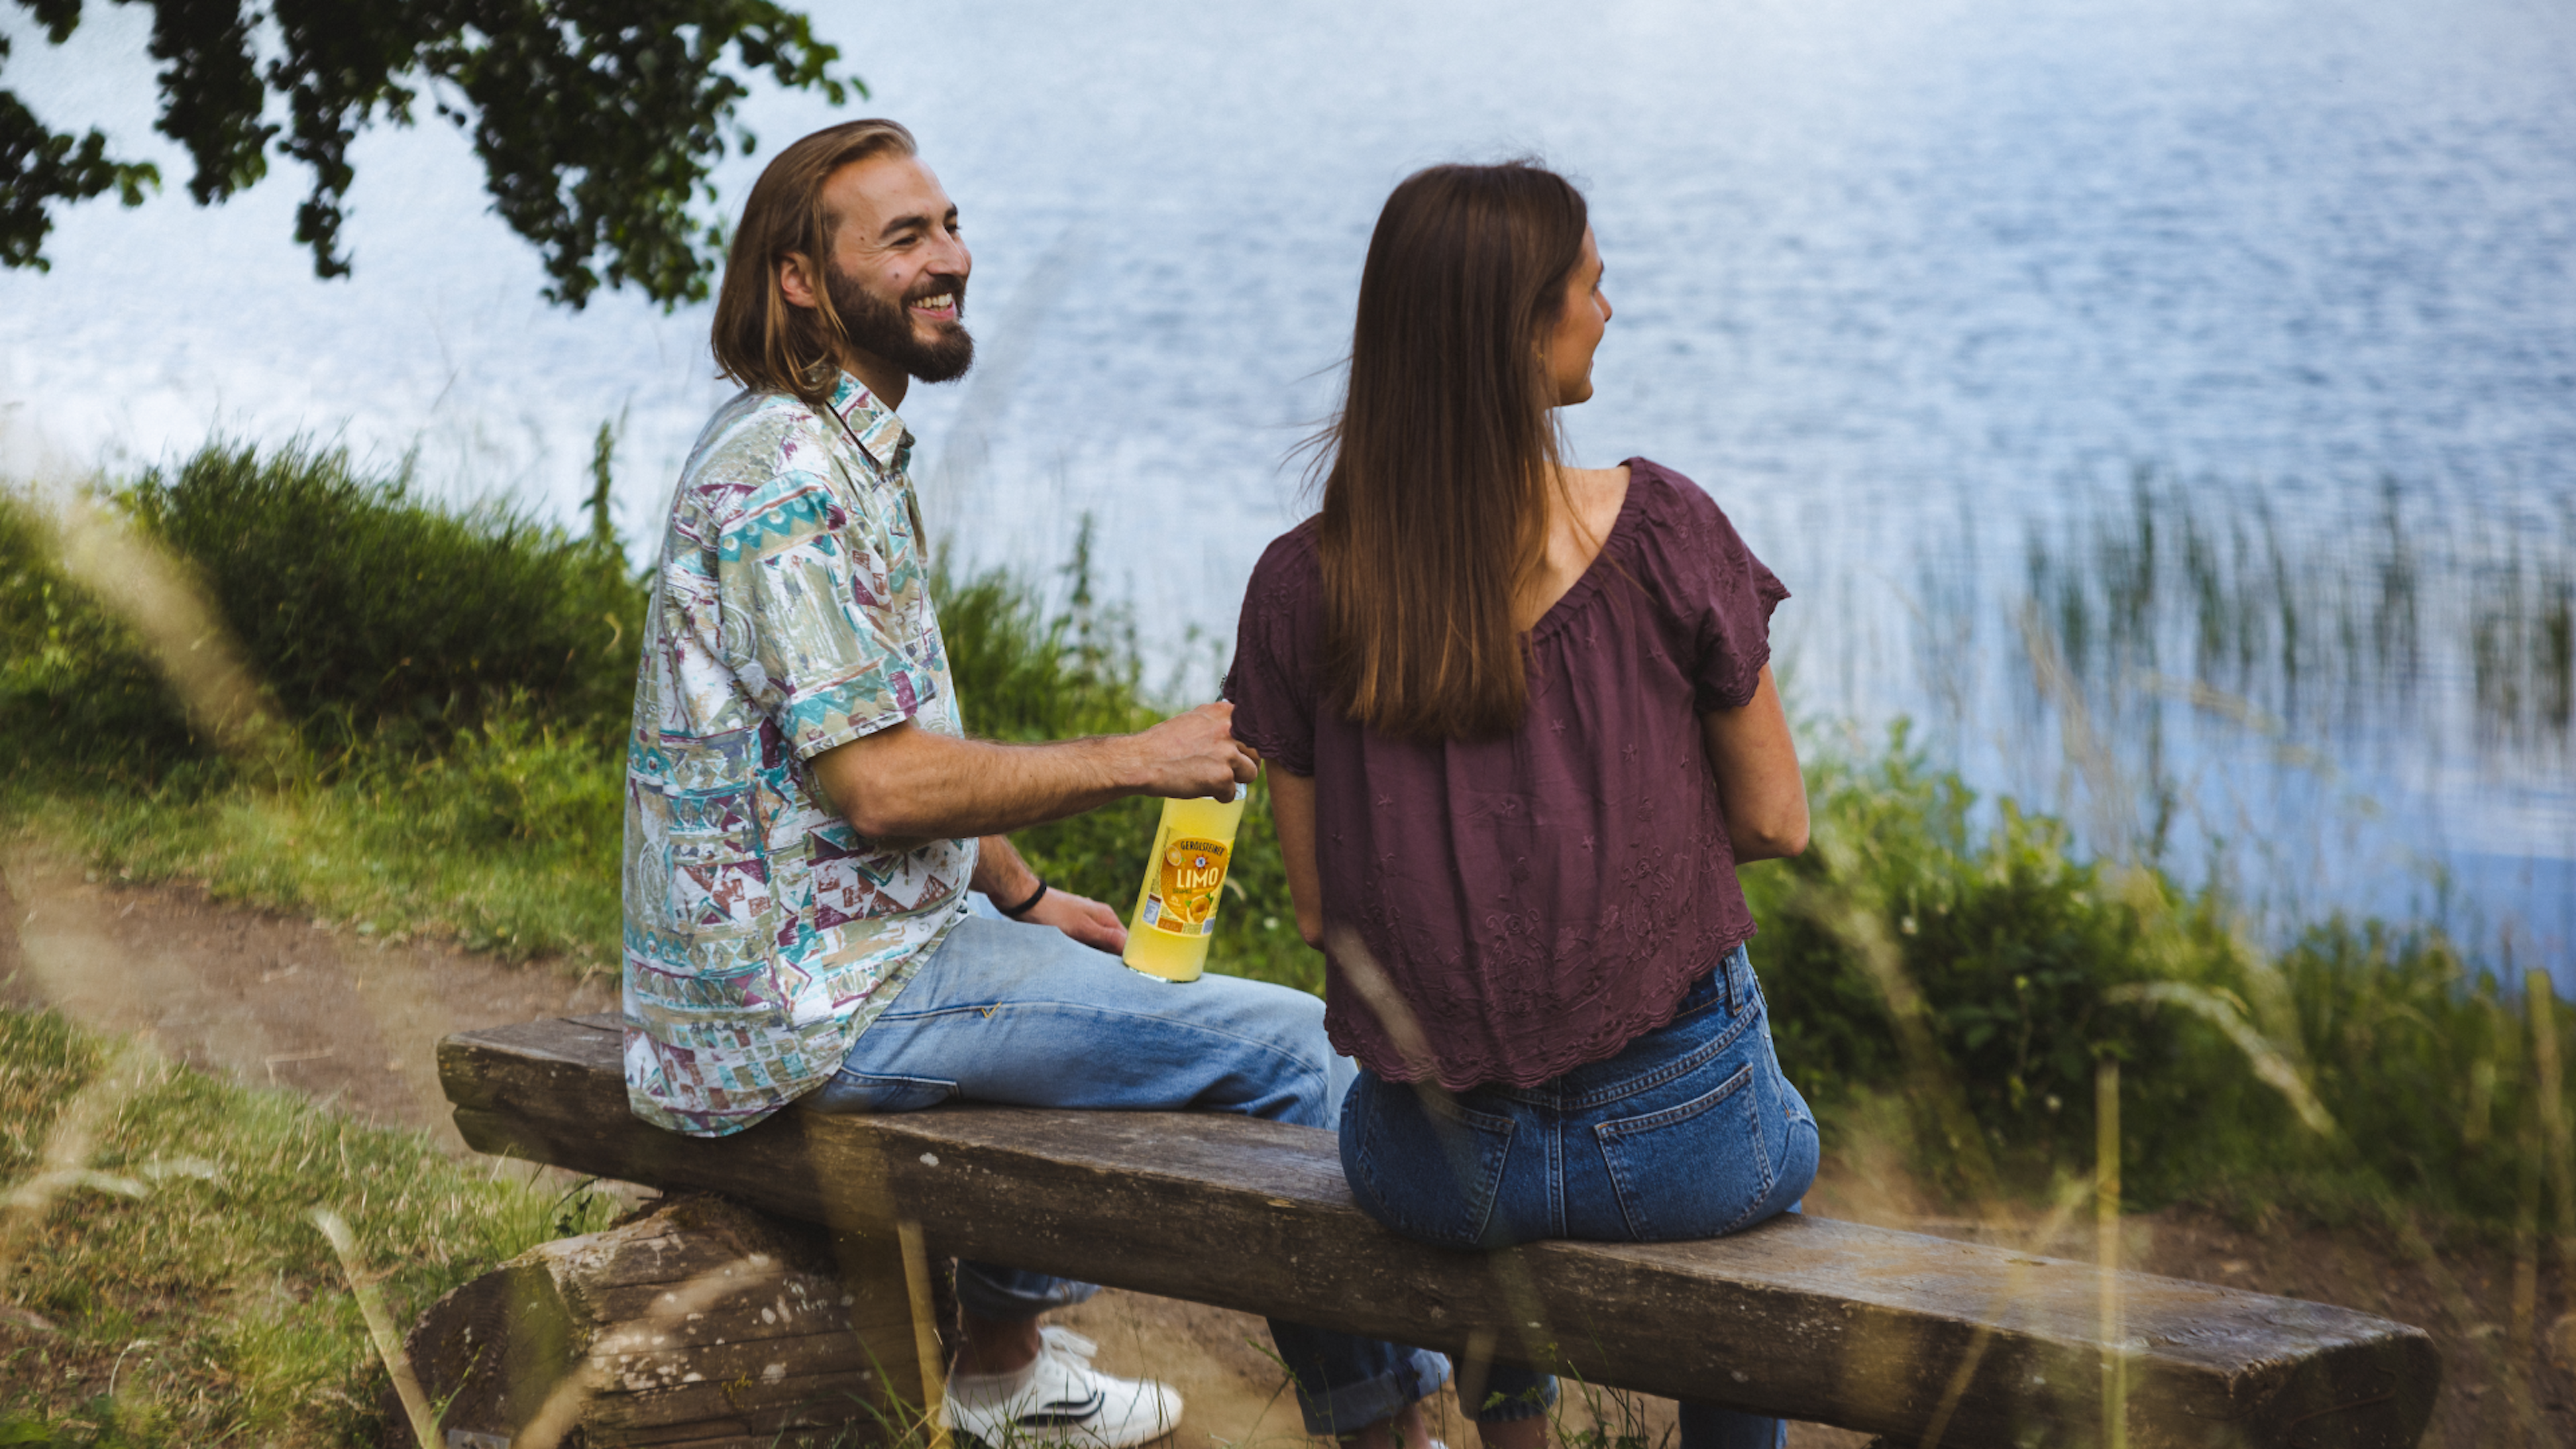 Ein Mann und eine Frau sitzen auf einer Bank am See und haben eine Flasche Orangenlimonade dabei